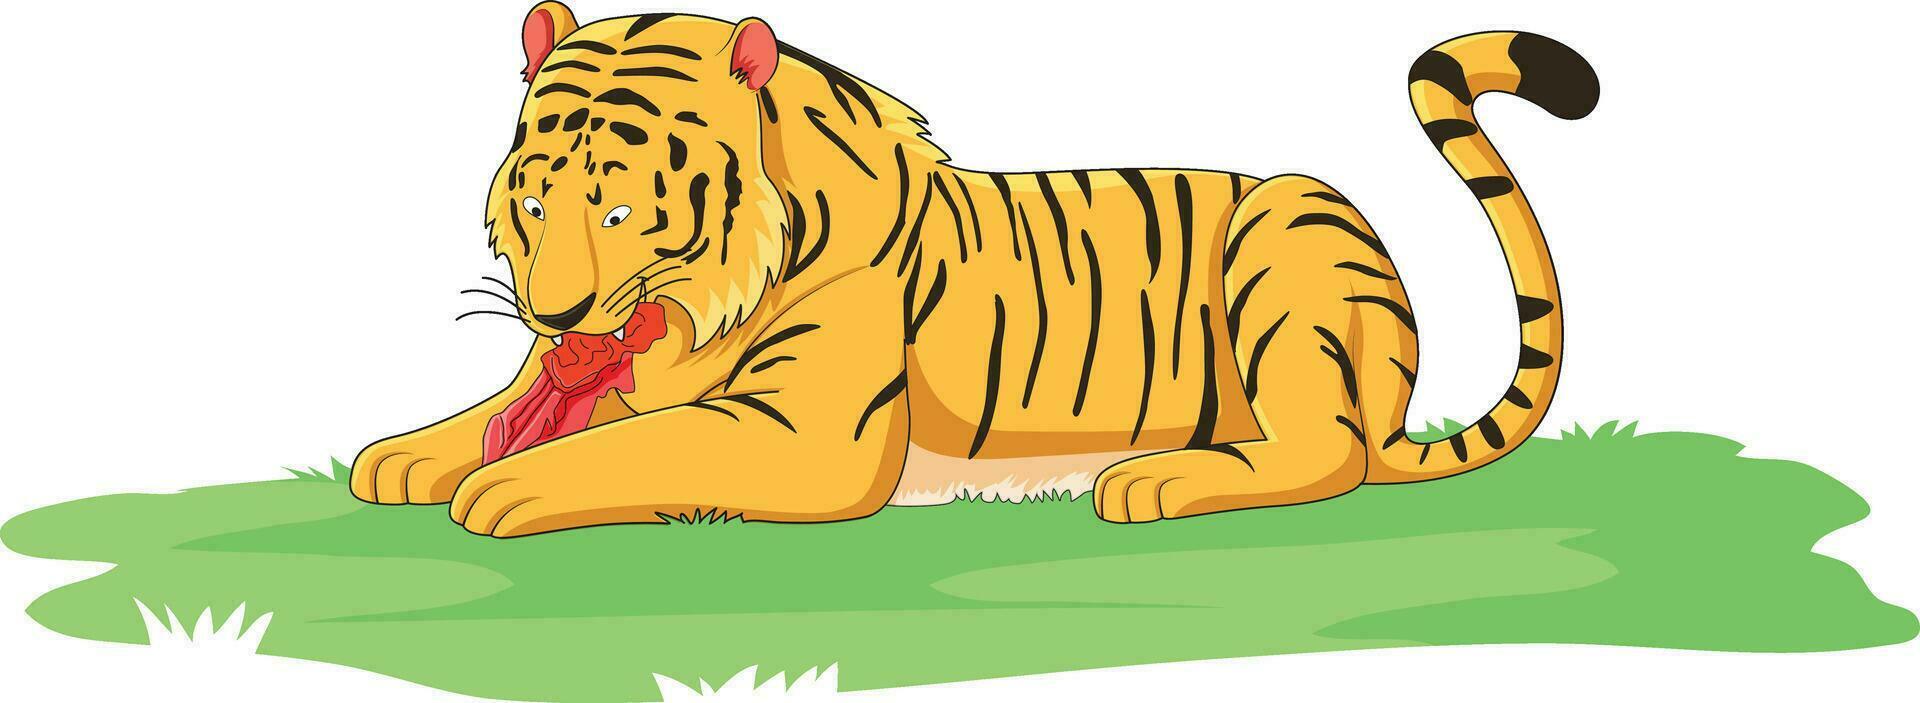 tijger aan het eten vlees vector illustratie